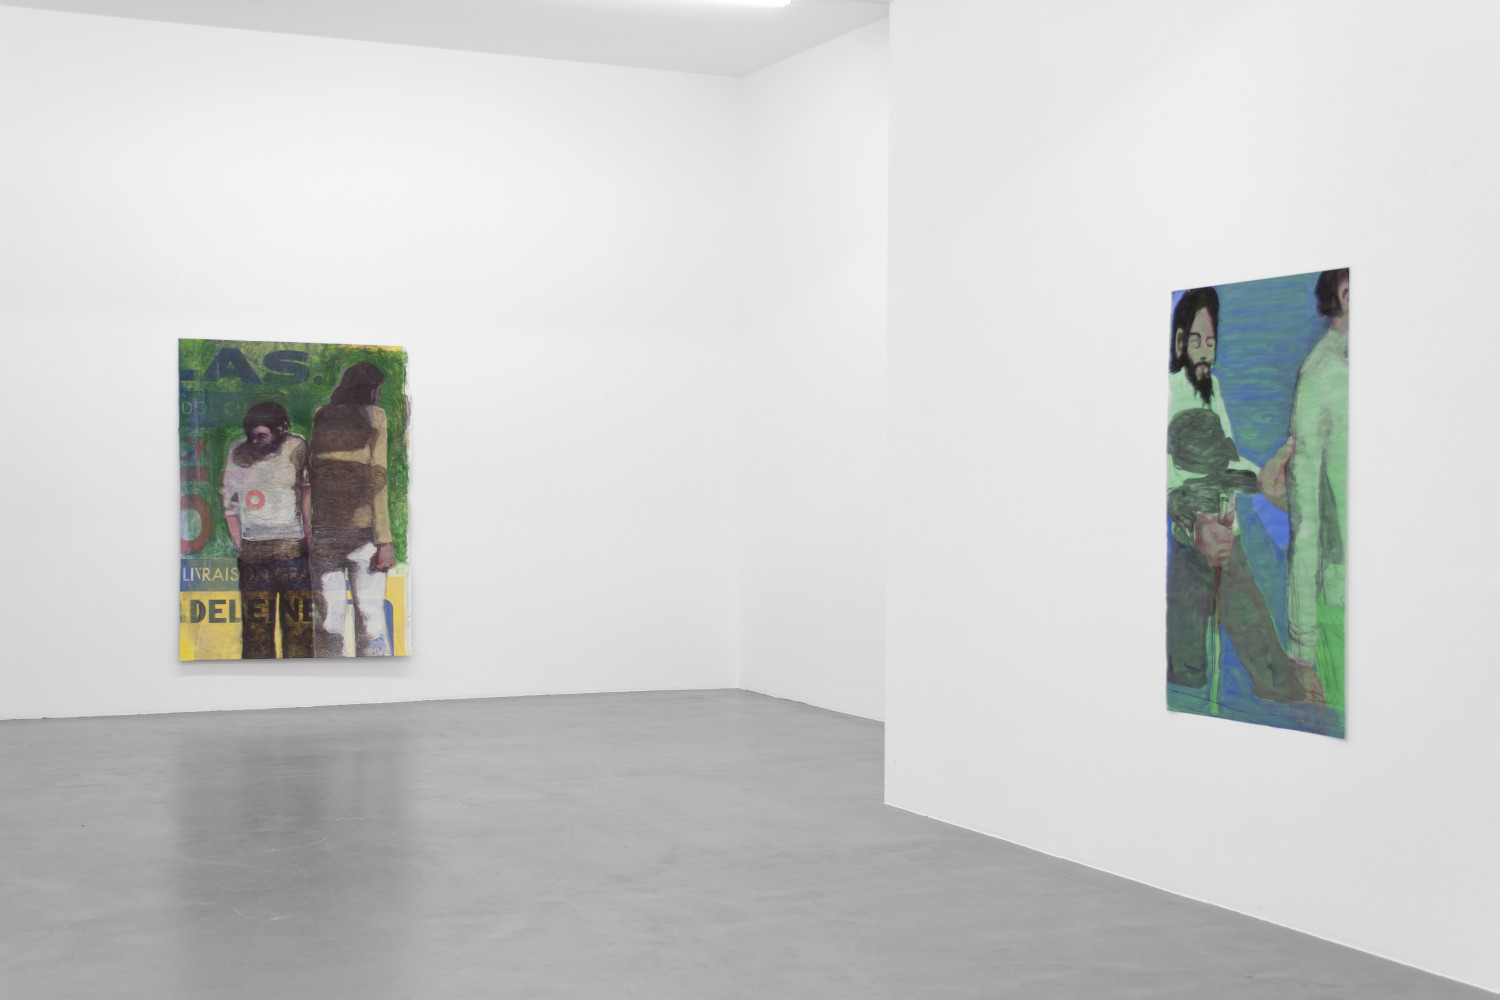 Jean Charles Blais, ‘Superposition’, Installationsansicht, Buchmann Galerie, 2016